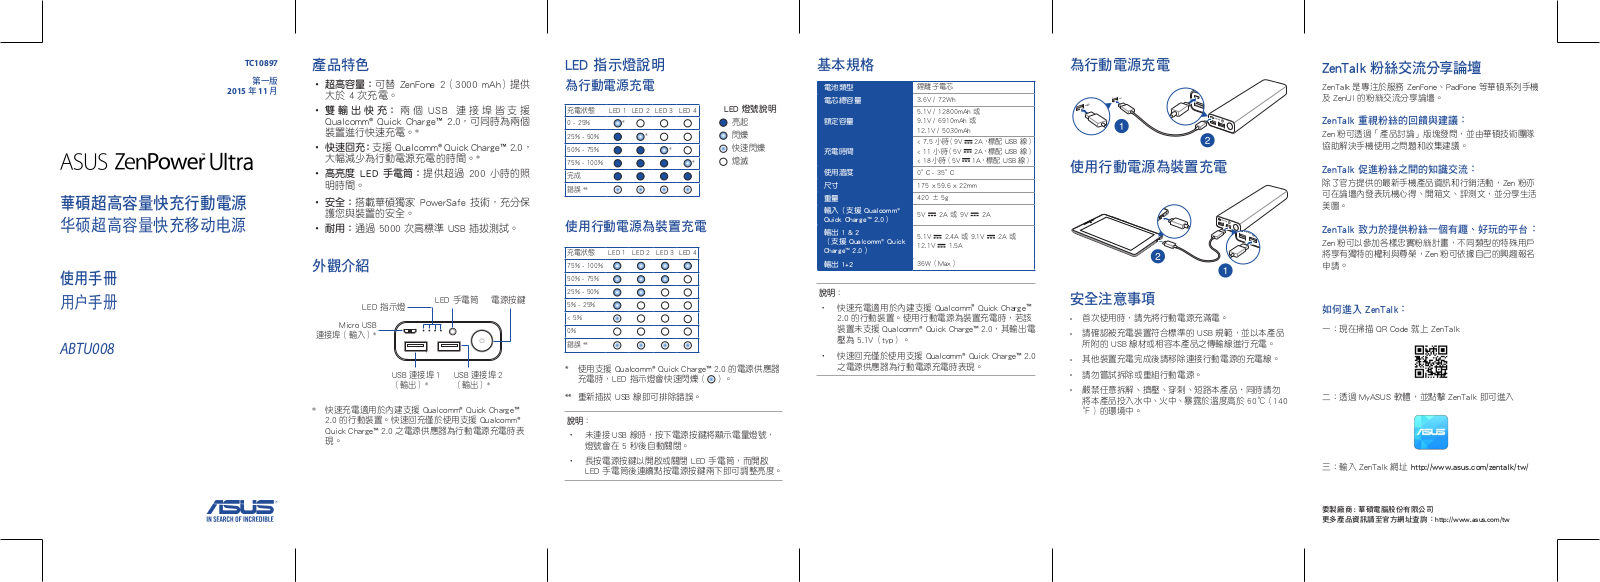 Asus ZenPower Ultra Quick Start Guide